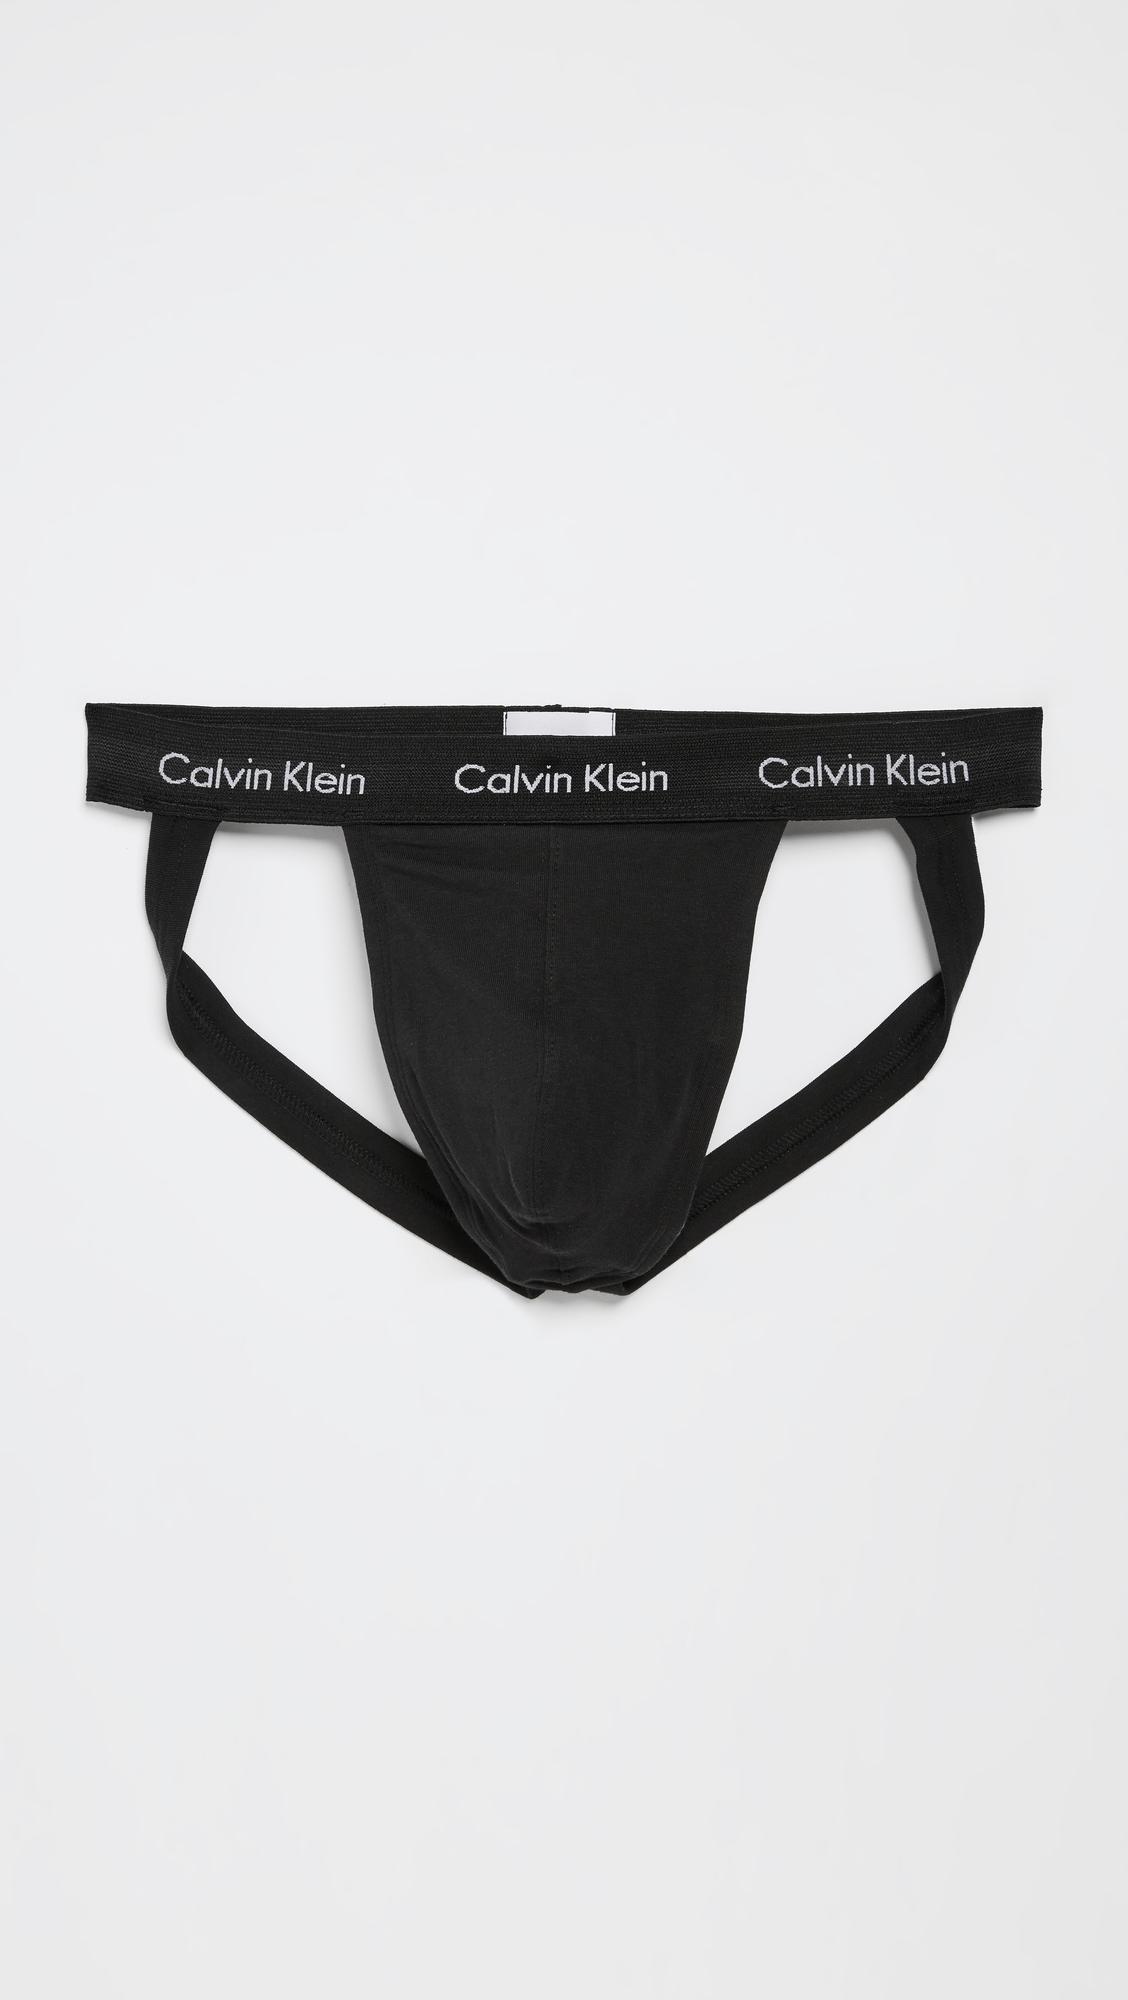 Calvin Klein Men's 3-Pack Cotton Stretch Jock Straps Underwear - Macy's